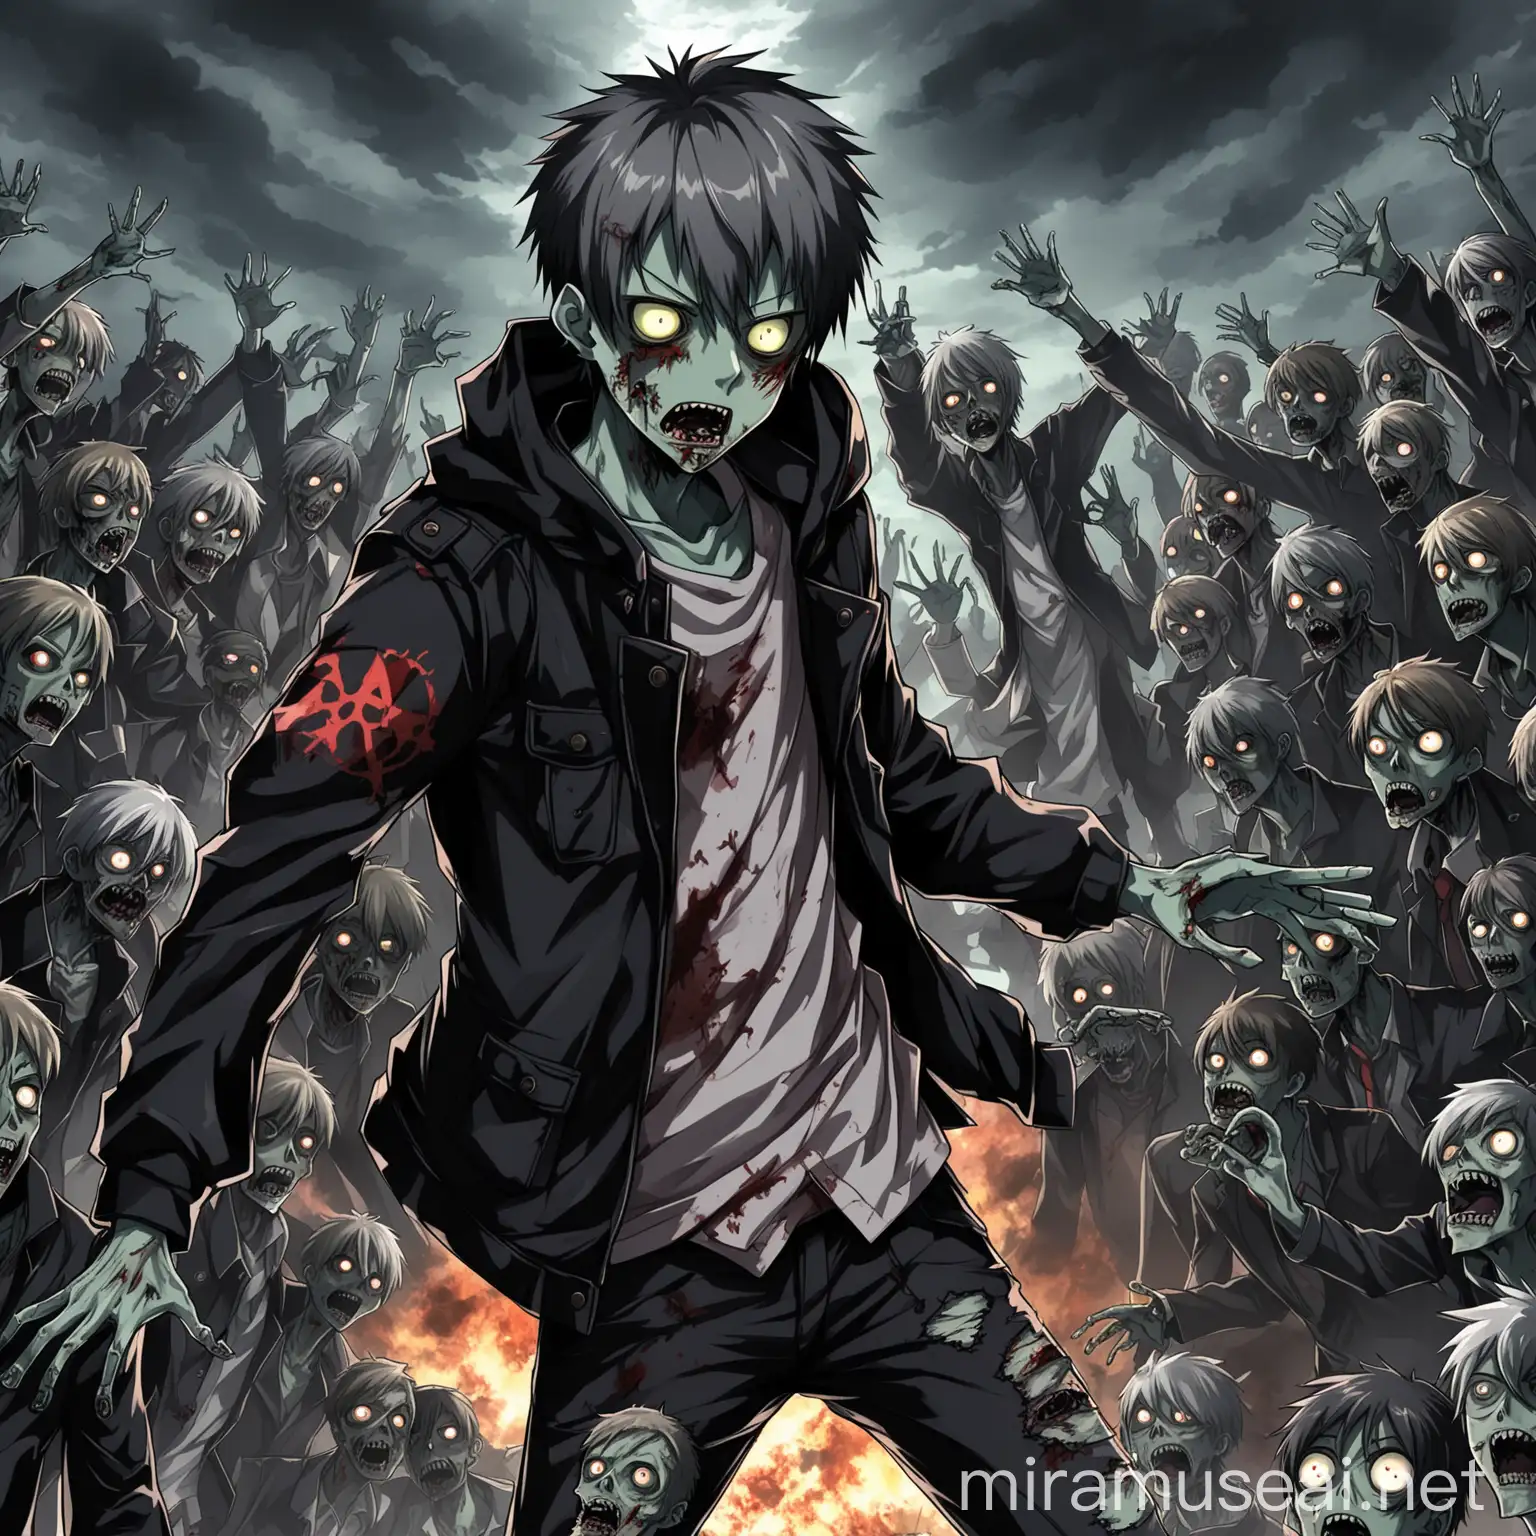 anime boy, black jacket, hold a revolve, zombie appocalypse